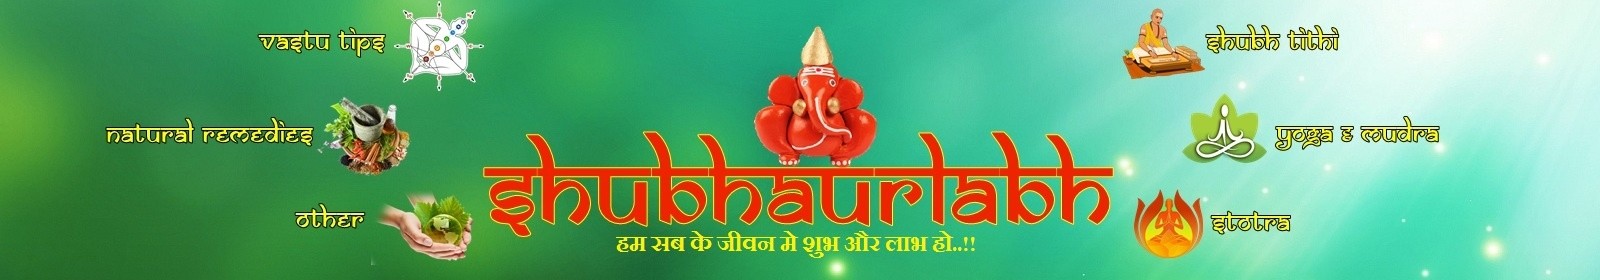 shubhaurlabh banner